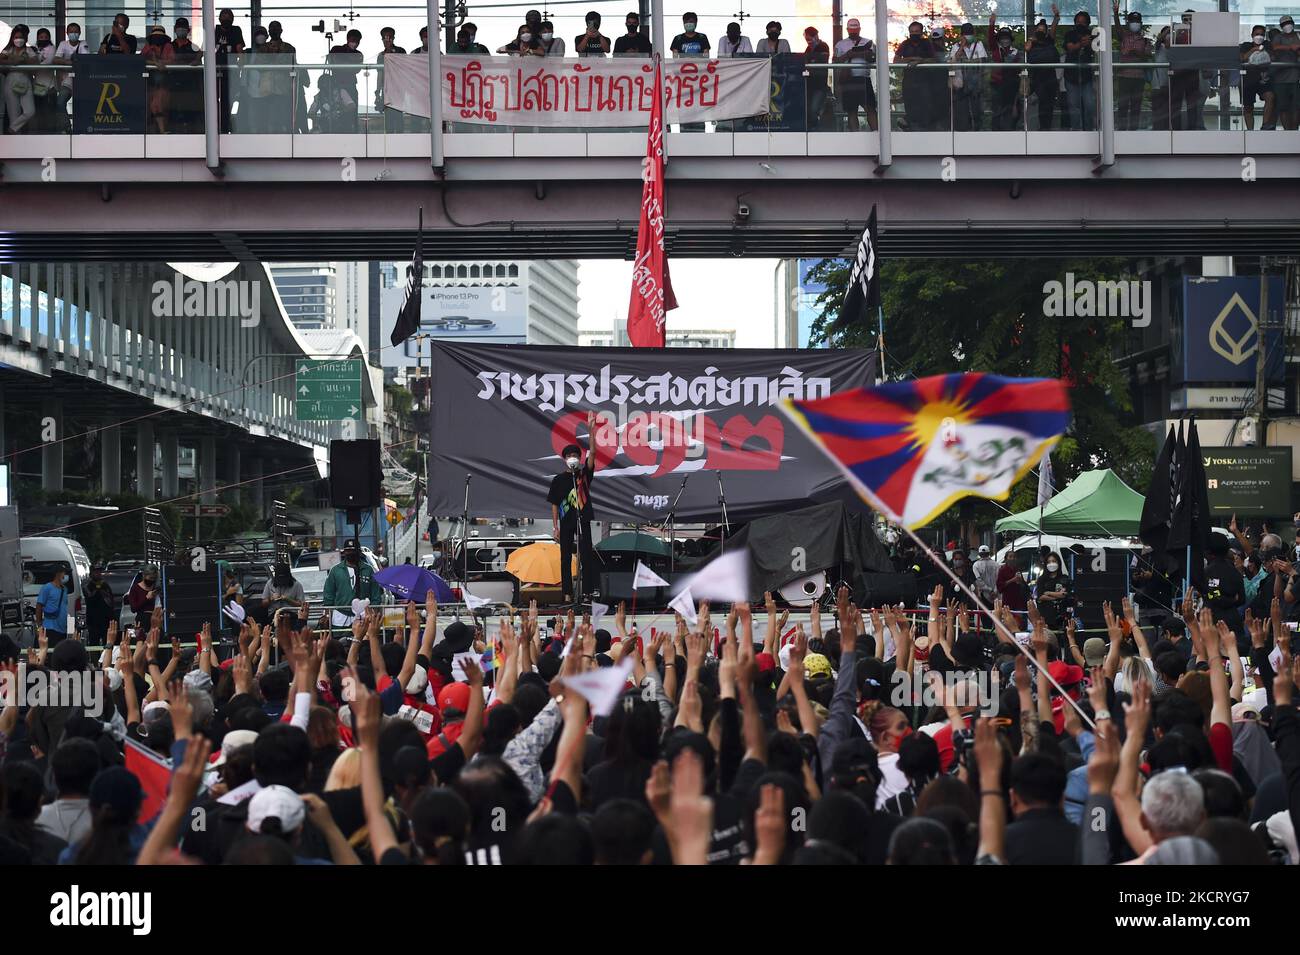 Les manifestants anti-gouvernement saluent avec trois doigts lorsqu'ils se réunissent pour protester contre la loi de la majorité lese à Bangkok, Thaïlande, le 31 octobre 2021. (Photo par Anusak Laowilas/NurPhoto) Banque D'Images